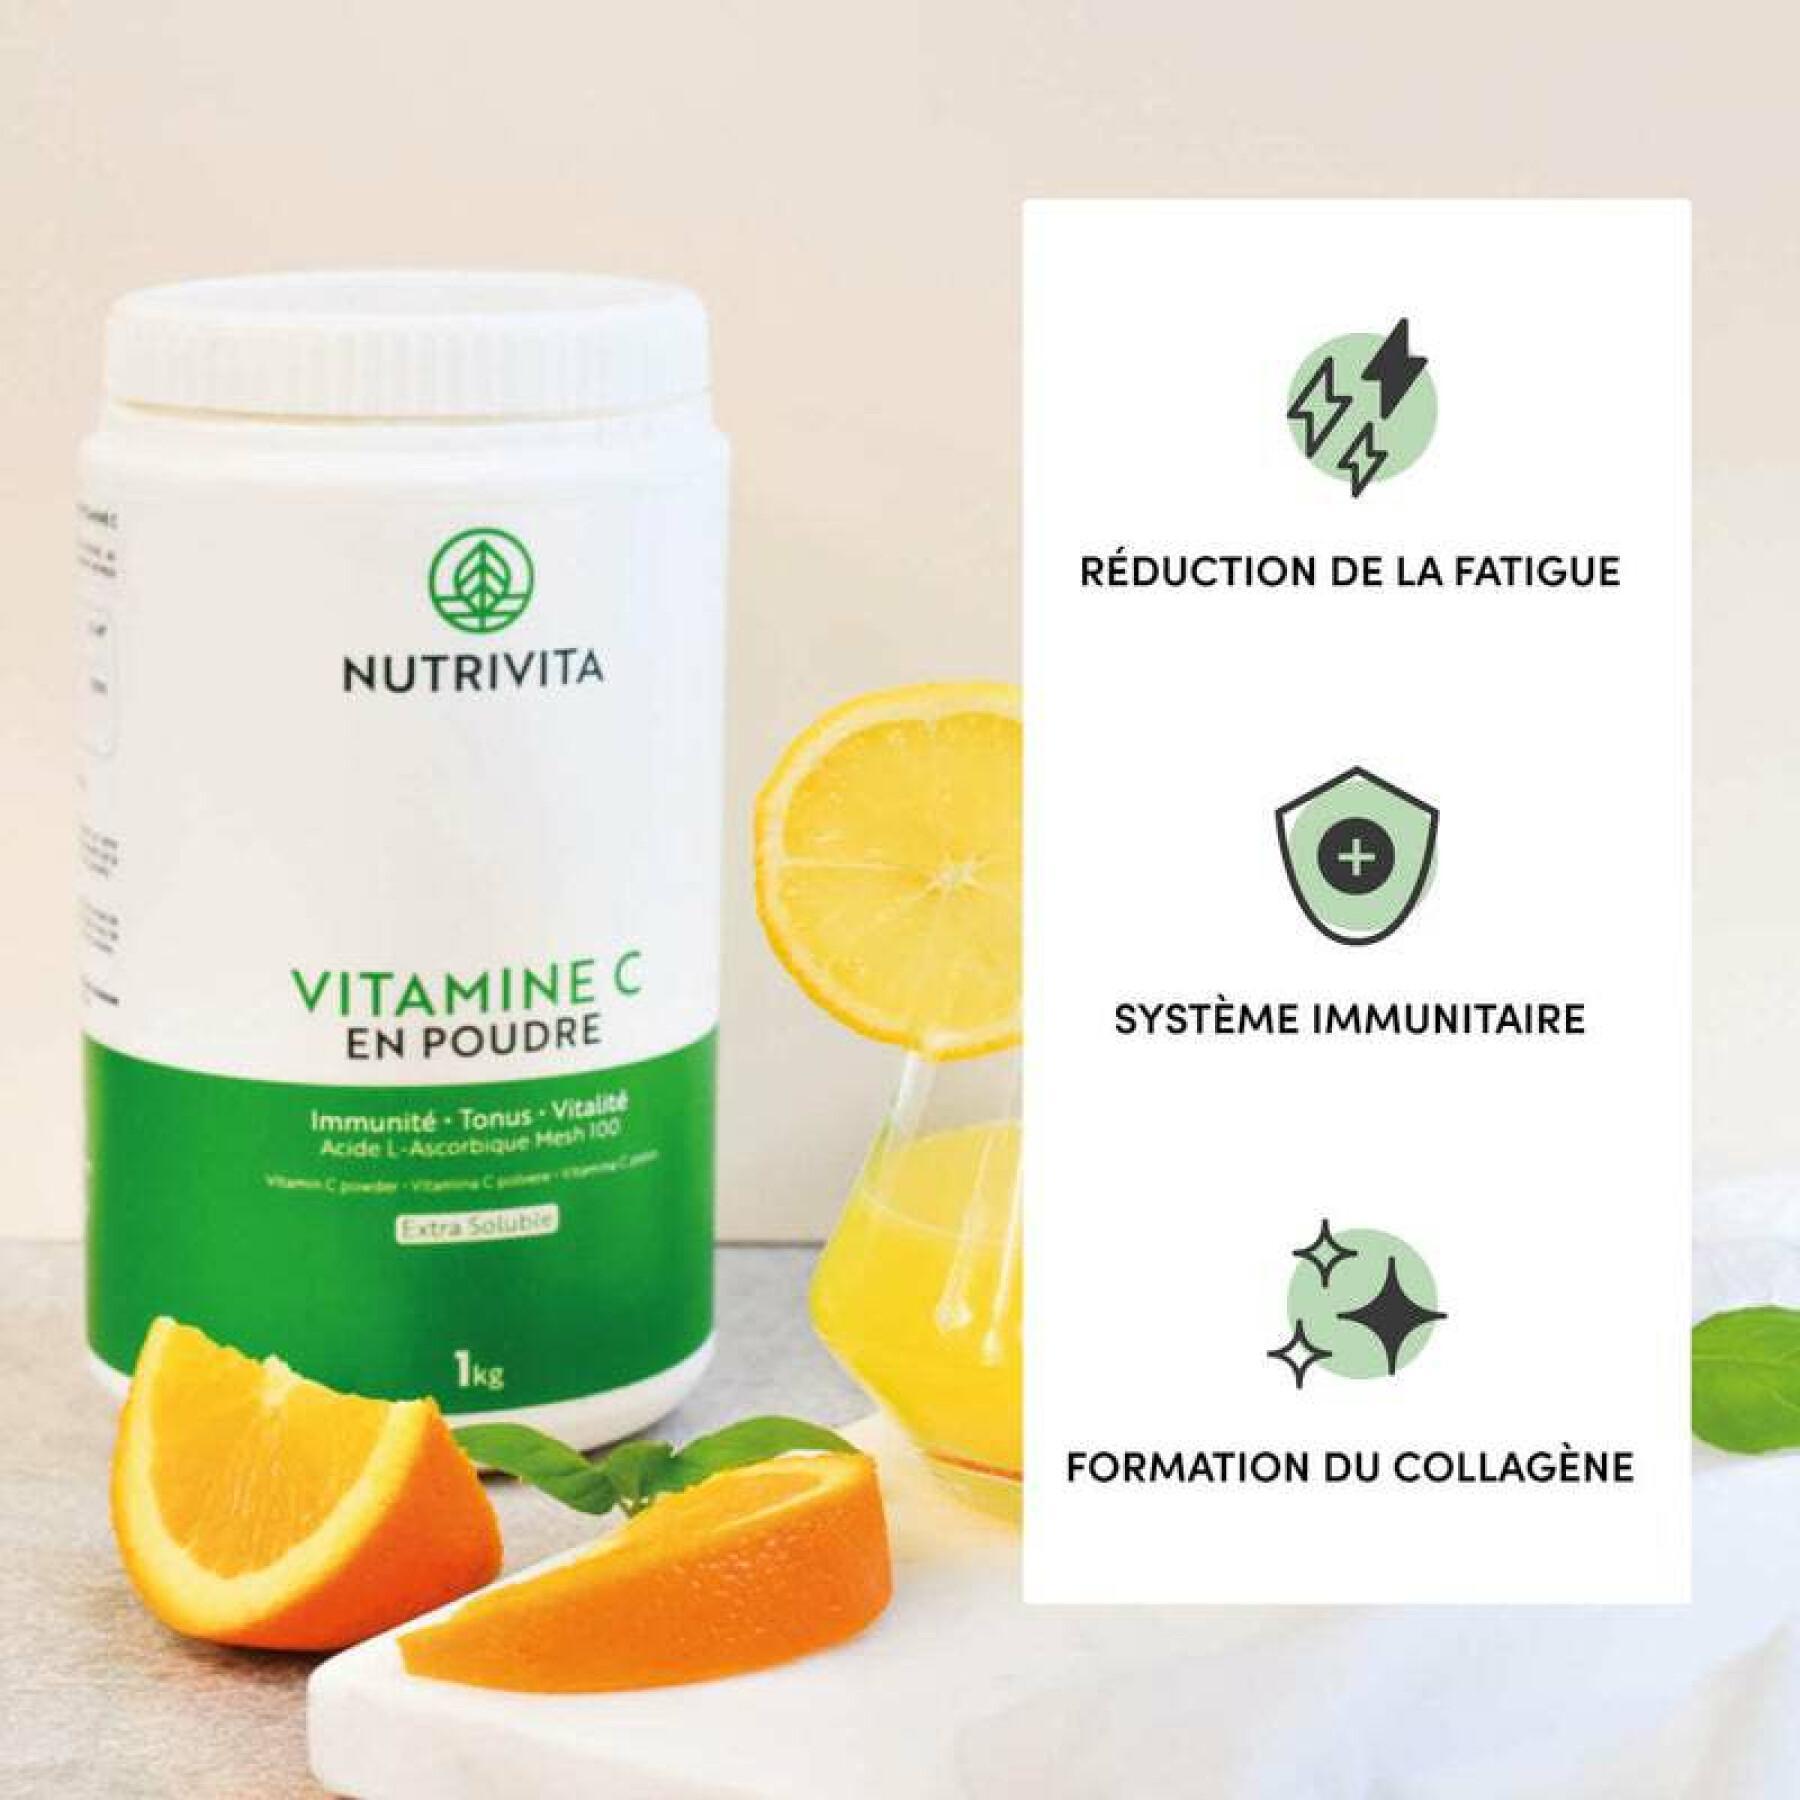 Voedingssupplement vitamine c poeder 1kg Nutrivita